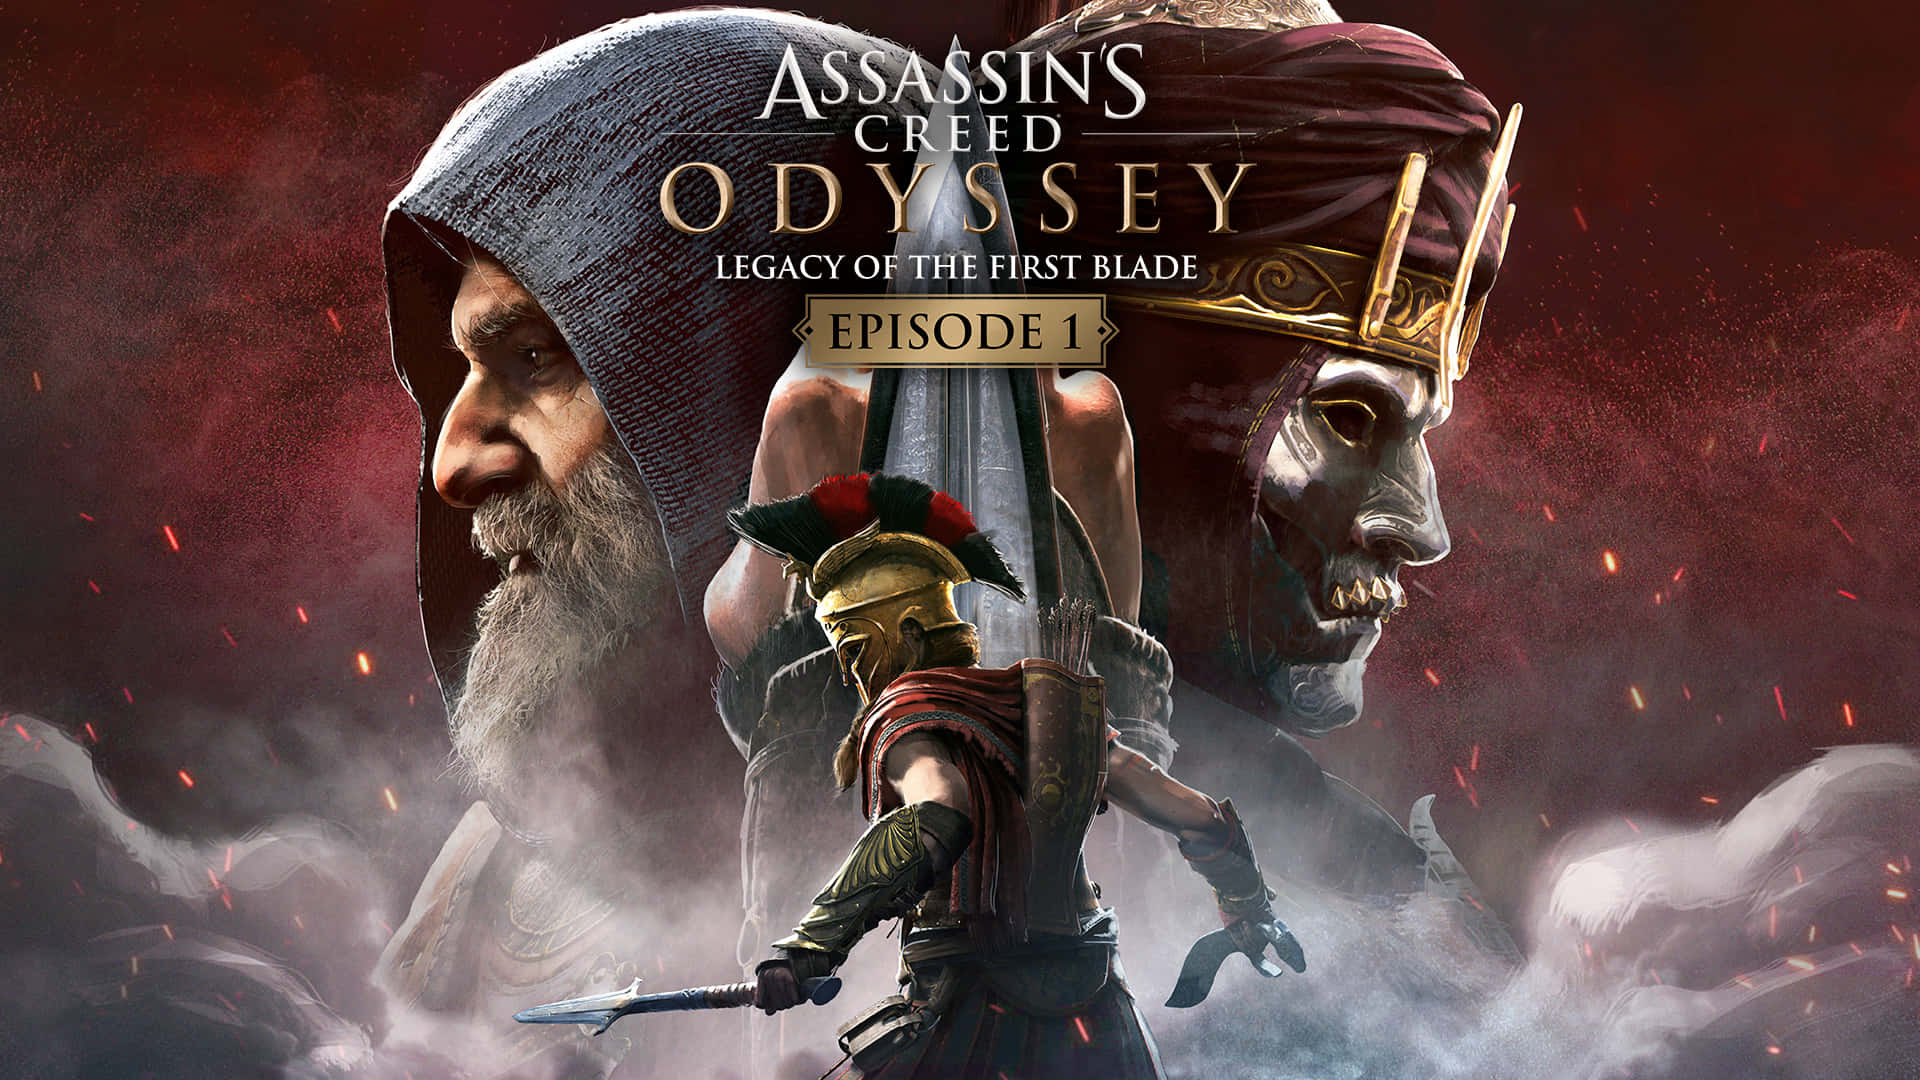 Fondode Pantalla De Assassin's Creed Odyssey Con El Logotipo Del Juego.